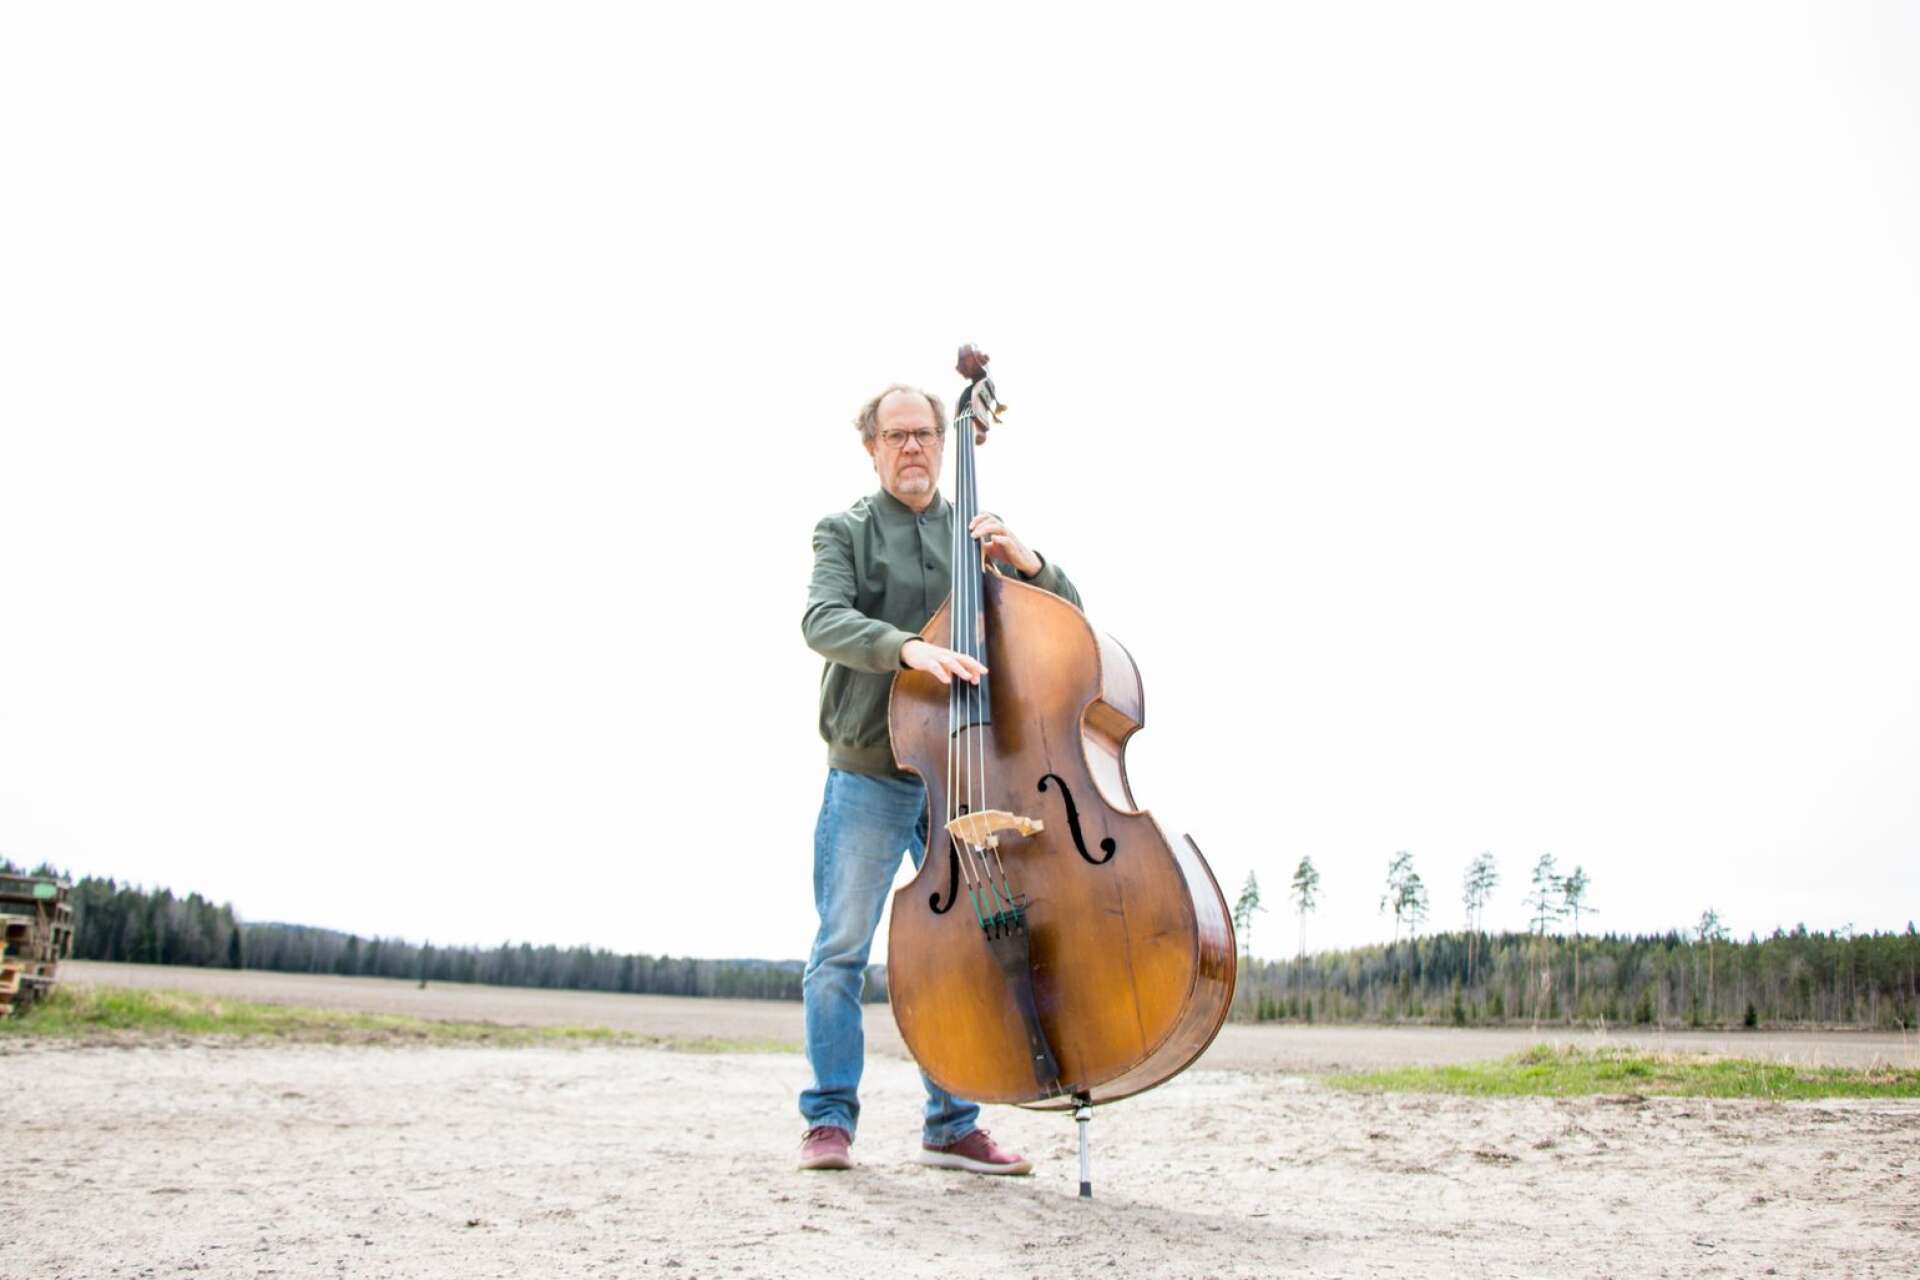 Vida vidder ramar in gården i Mellbyn. Själv har Bruno Råberg aldrig haft en tanke på att bli bonde, det fanns aldrig något alternativ till musiken.